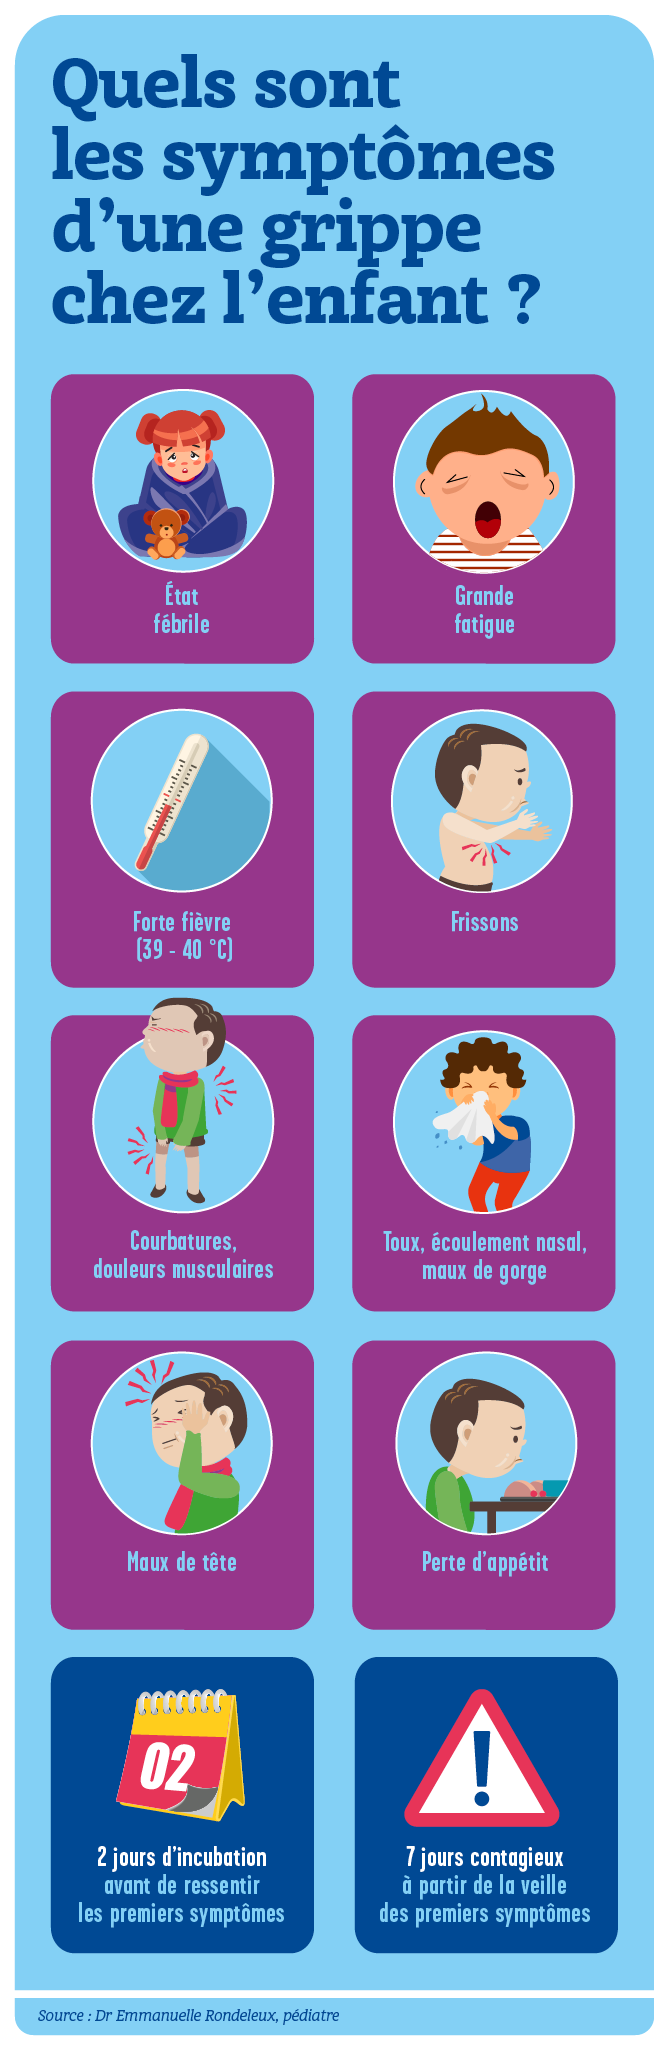 Comment prévenir la grippe chez l'enfant ?